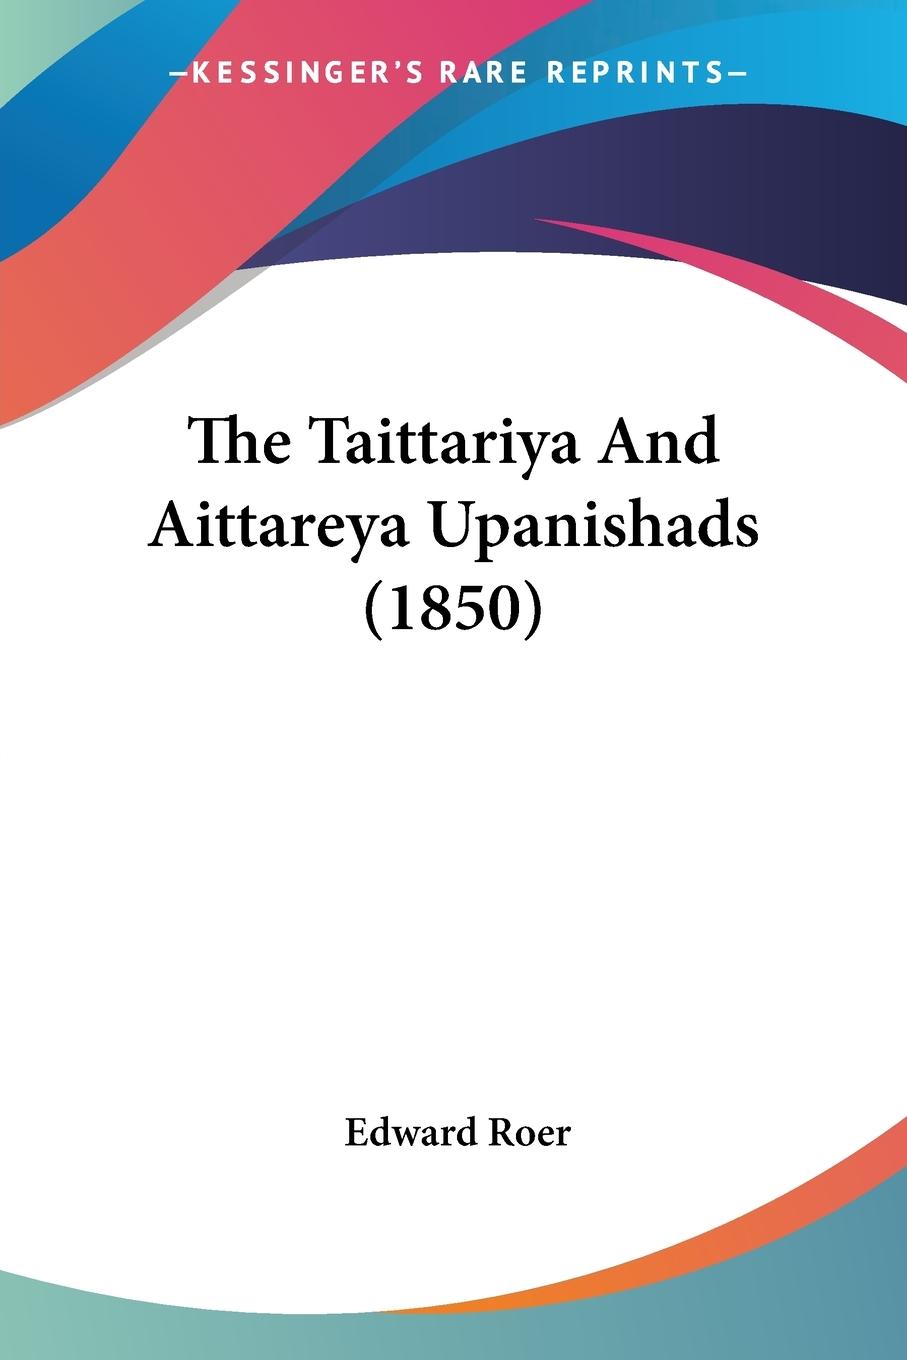 The Taittariya And Aittareya Upanishads (1850)